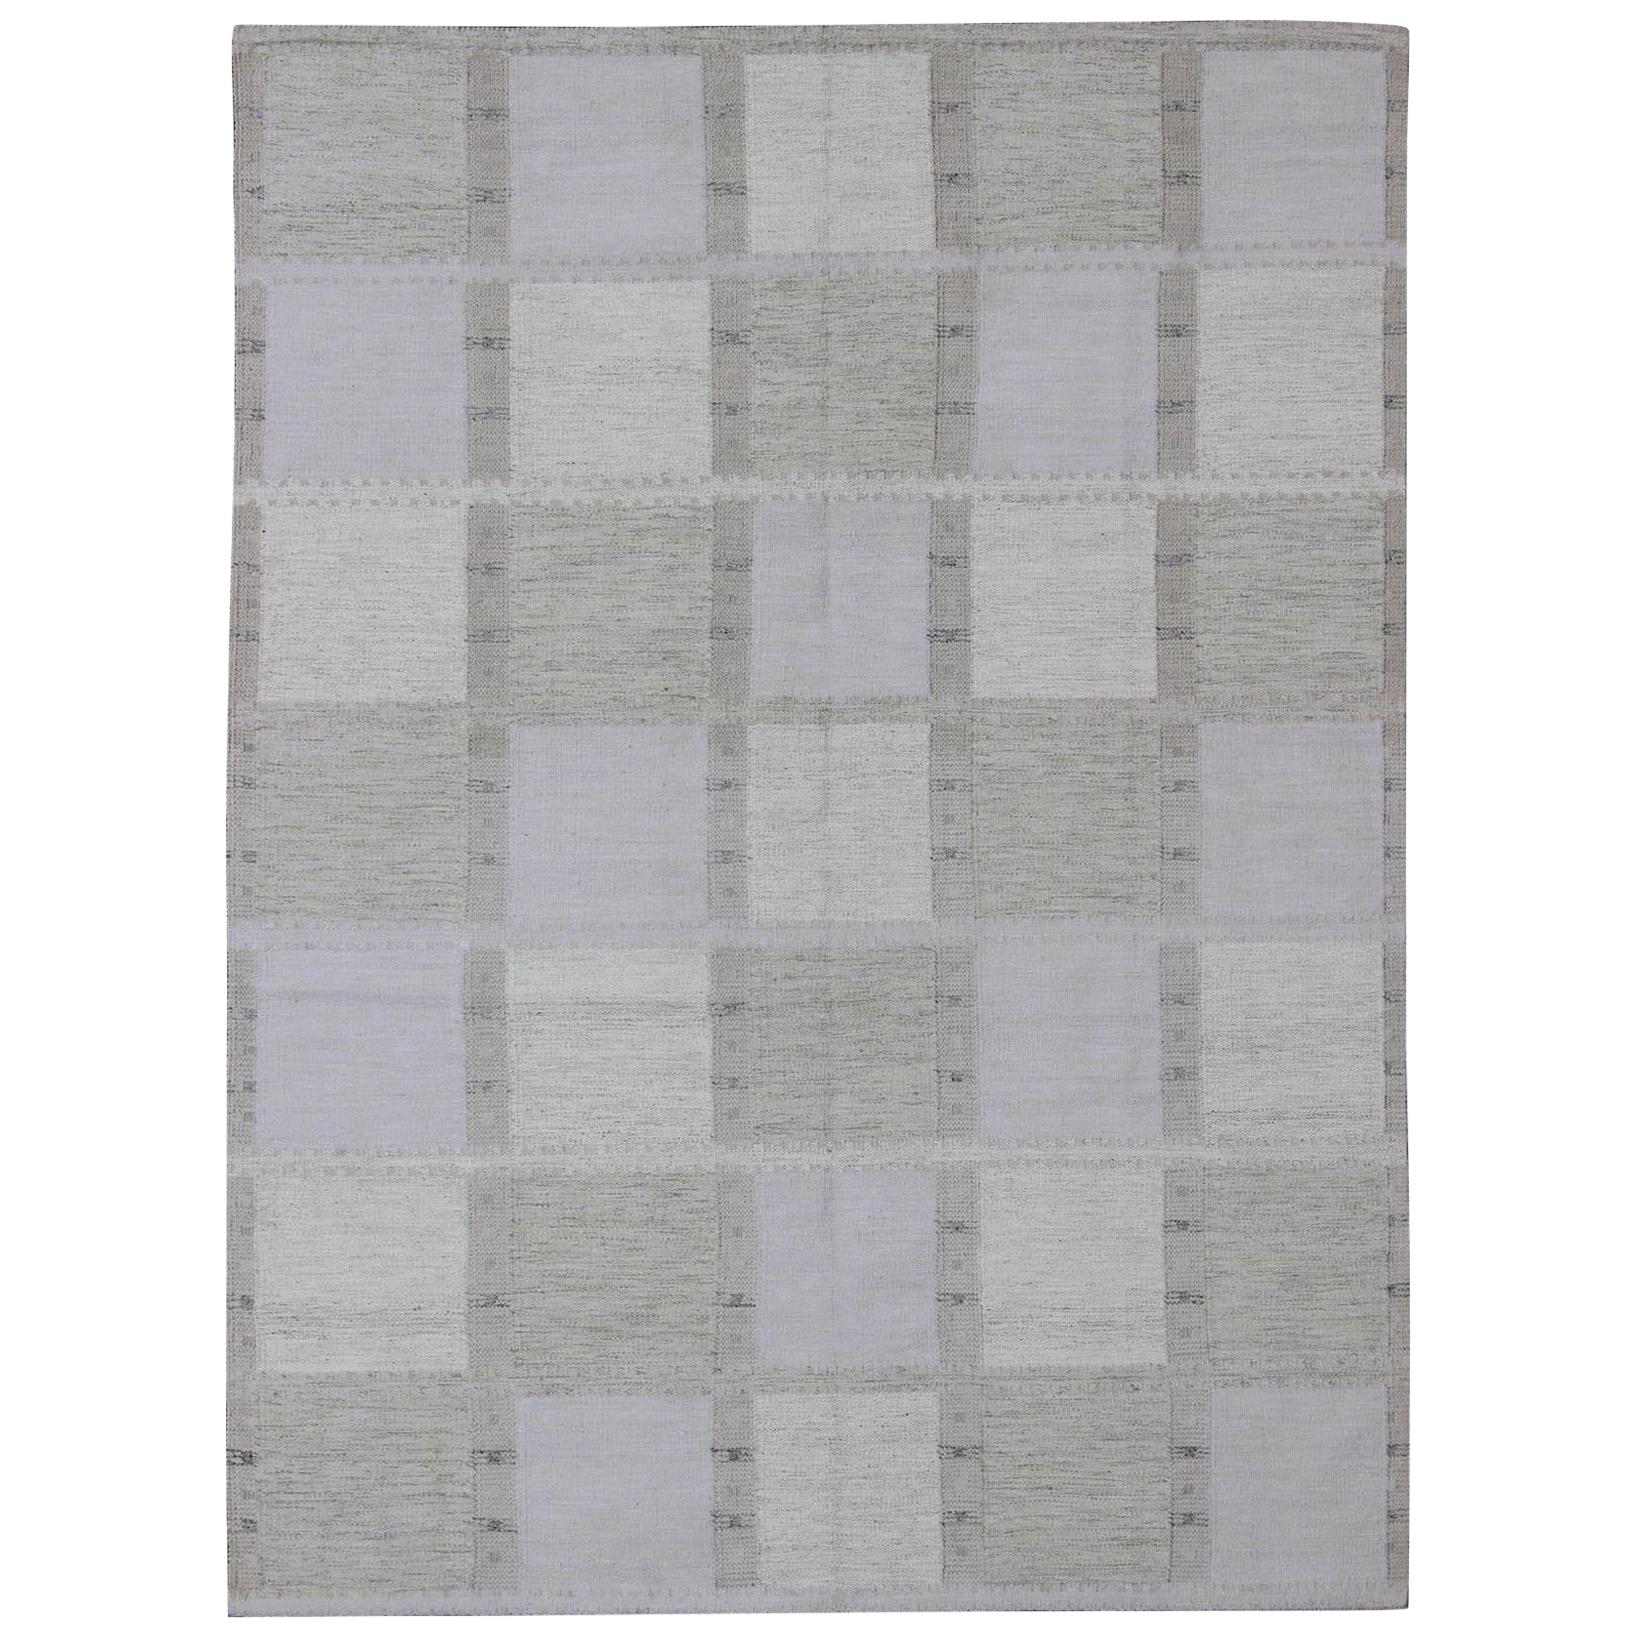 Moderner skandinavischer Flachgewebe-Teppich im skandinavischen Design mit Schachbrettdesign in grauen Tönen